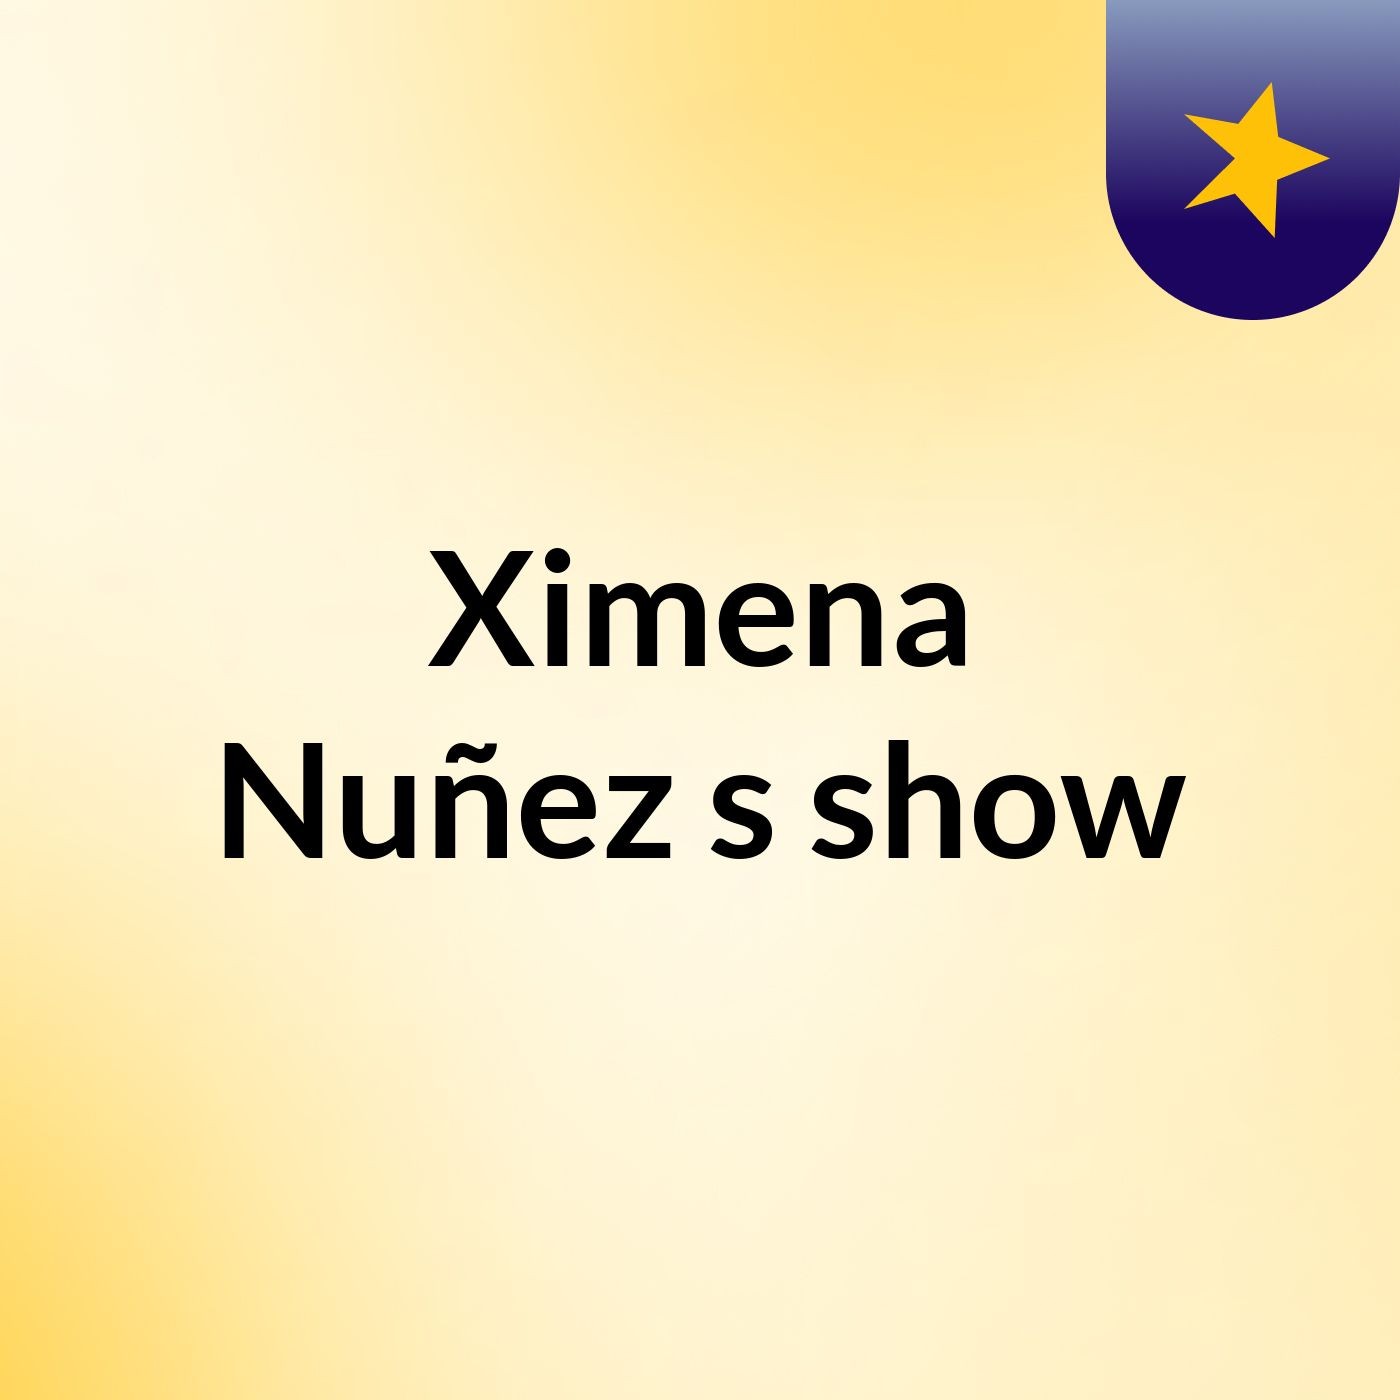 Ximena Nuñez's show